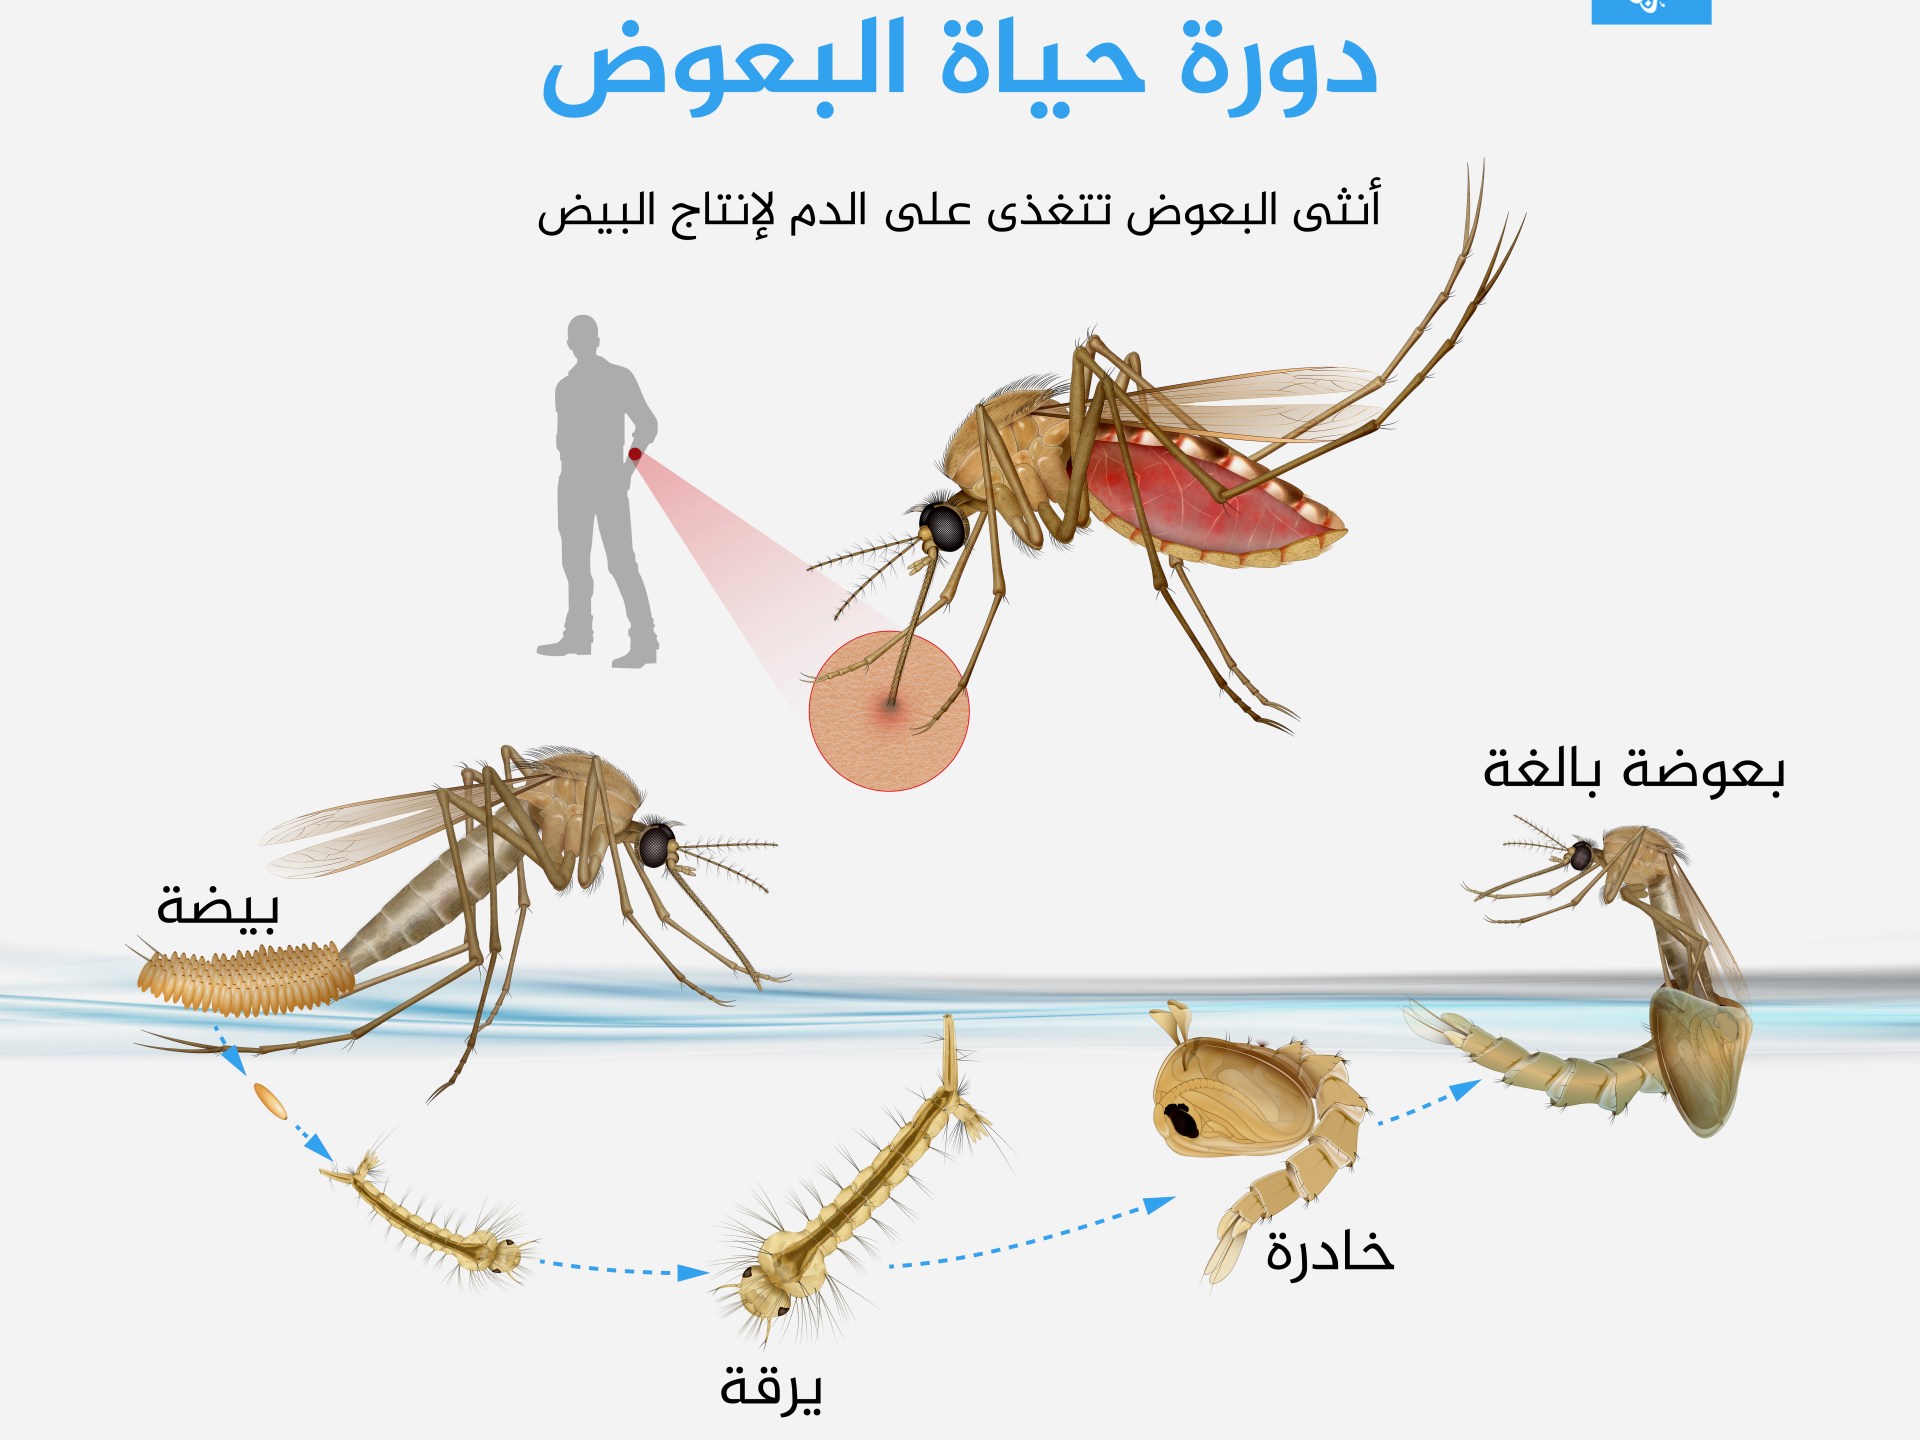 Une étude met en garde : les moustiques deviennent plus résistants aux pesticides à certains endroits |  santé